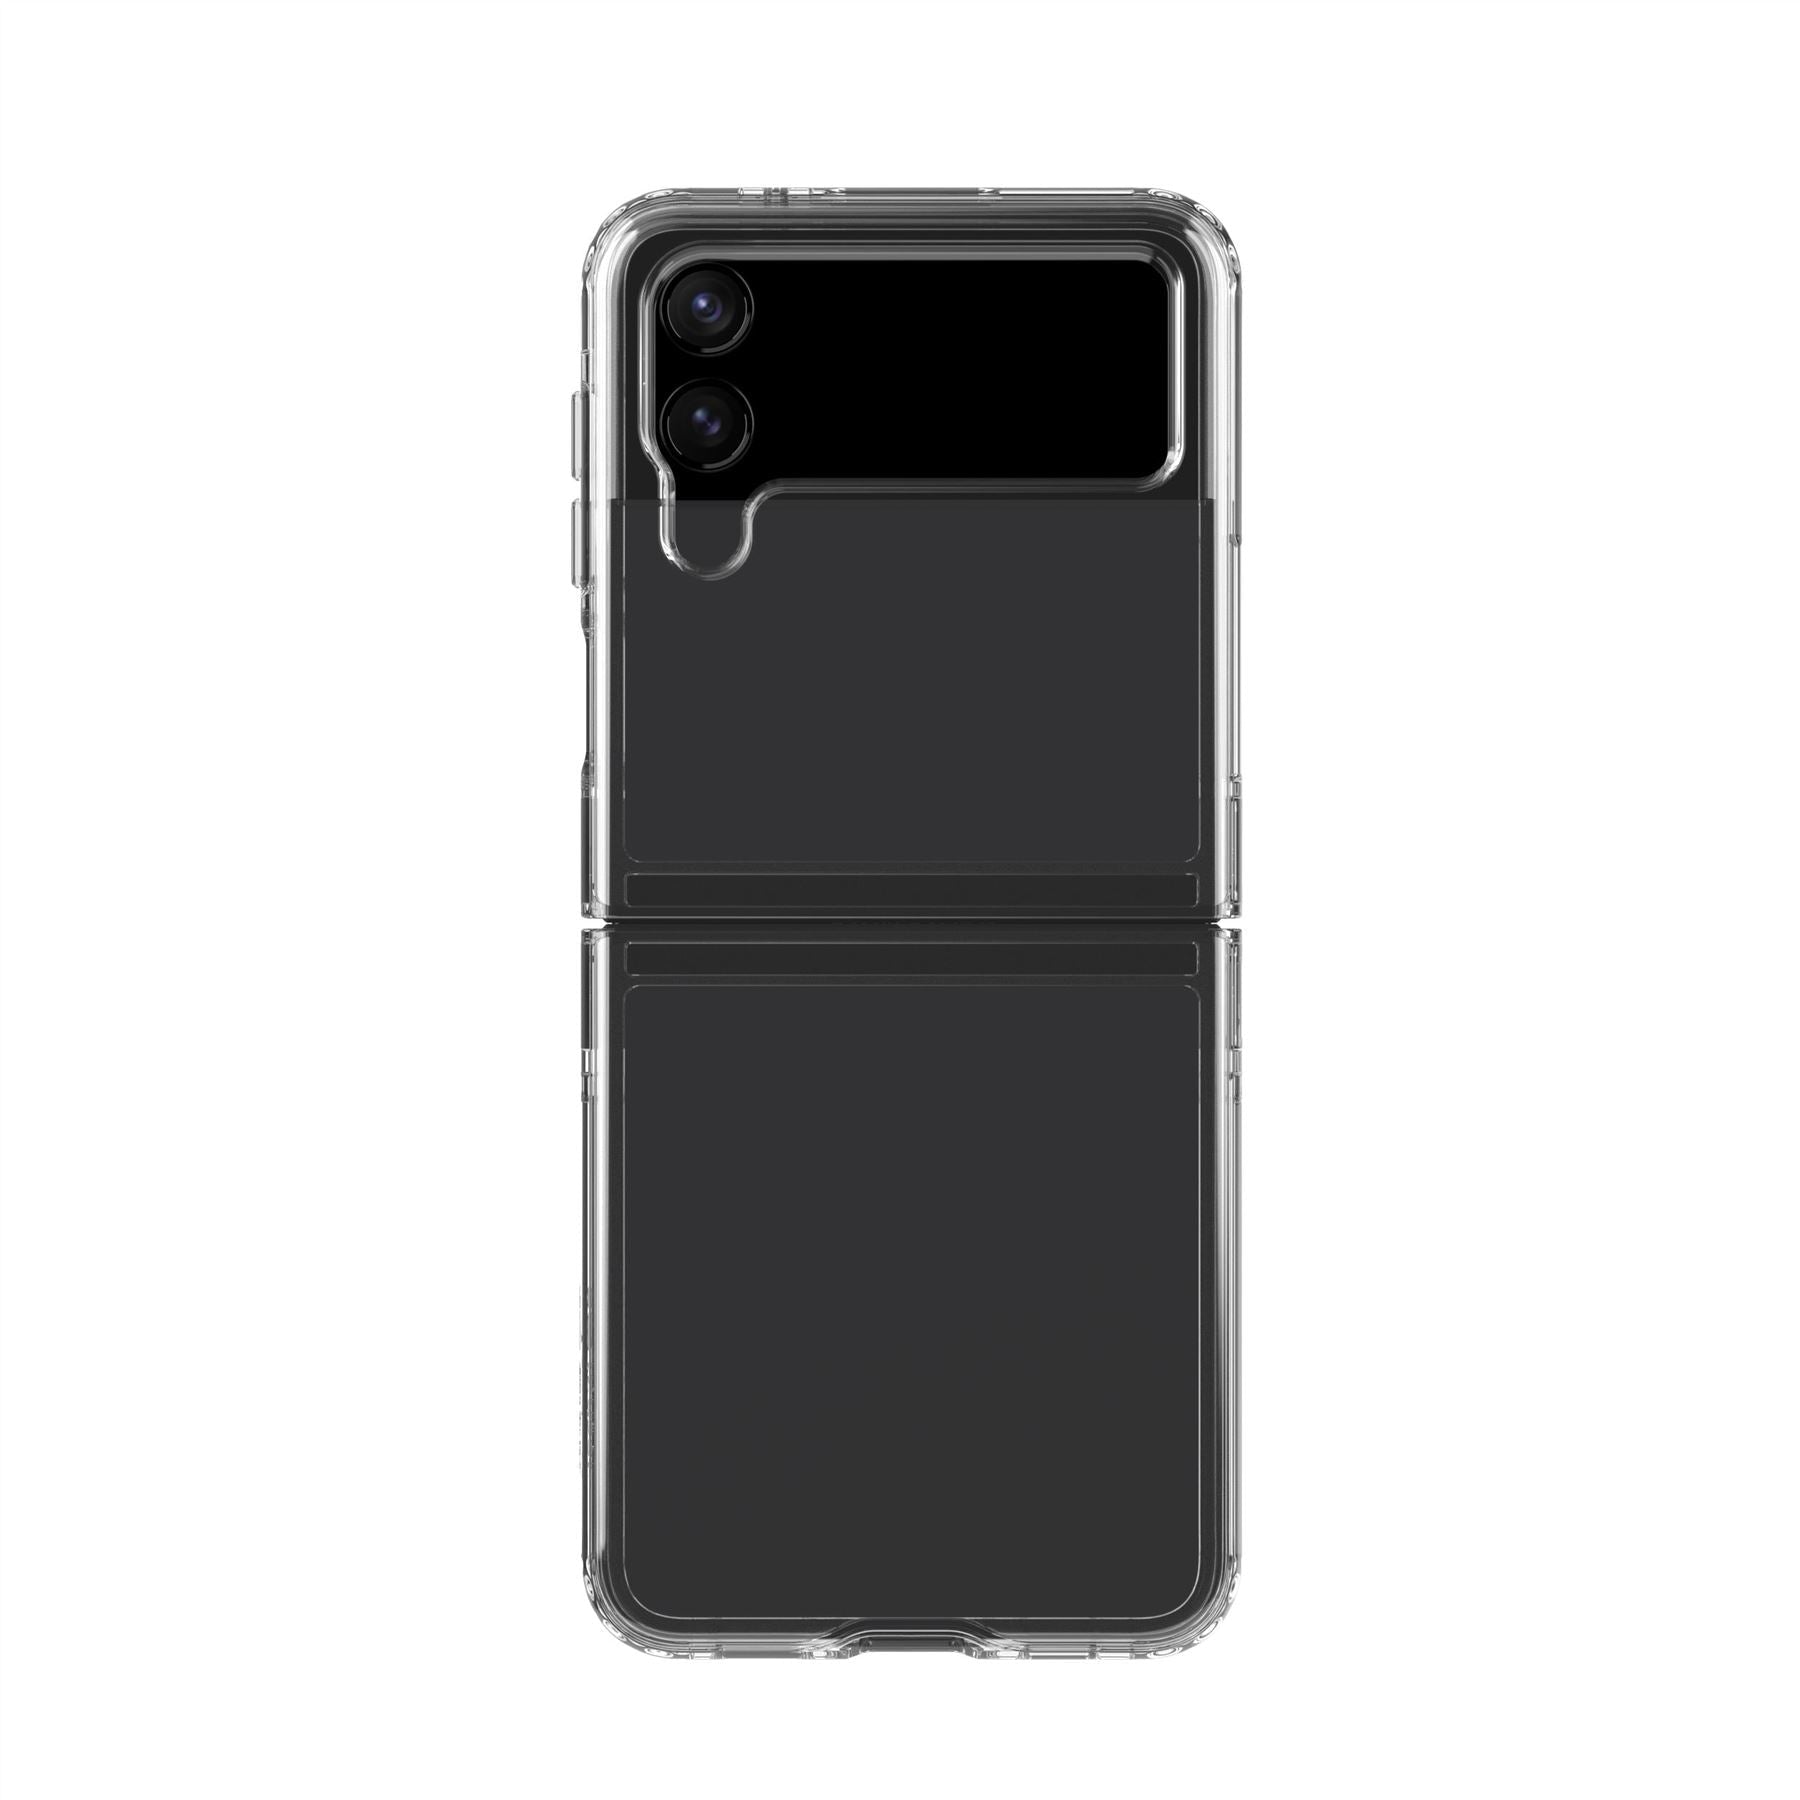 Tech21 T21-9555 mobile phone case 17 cm (6.7") Cover Transparent